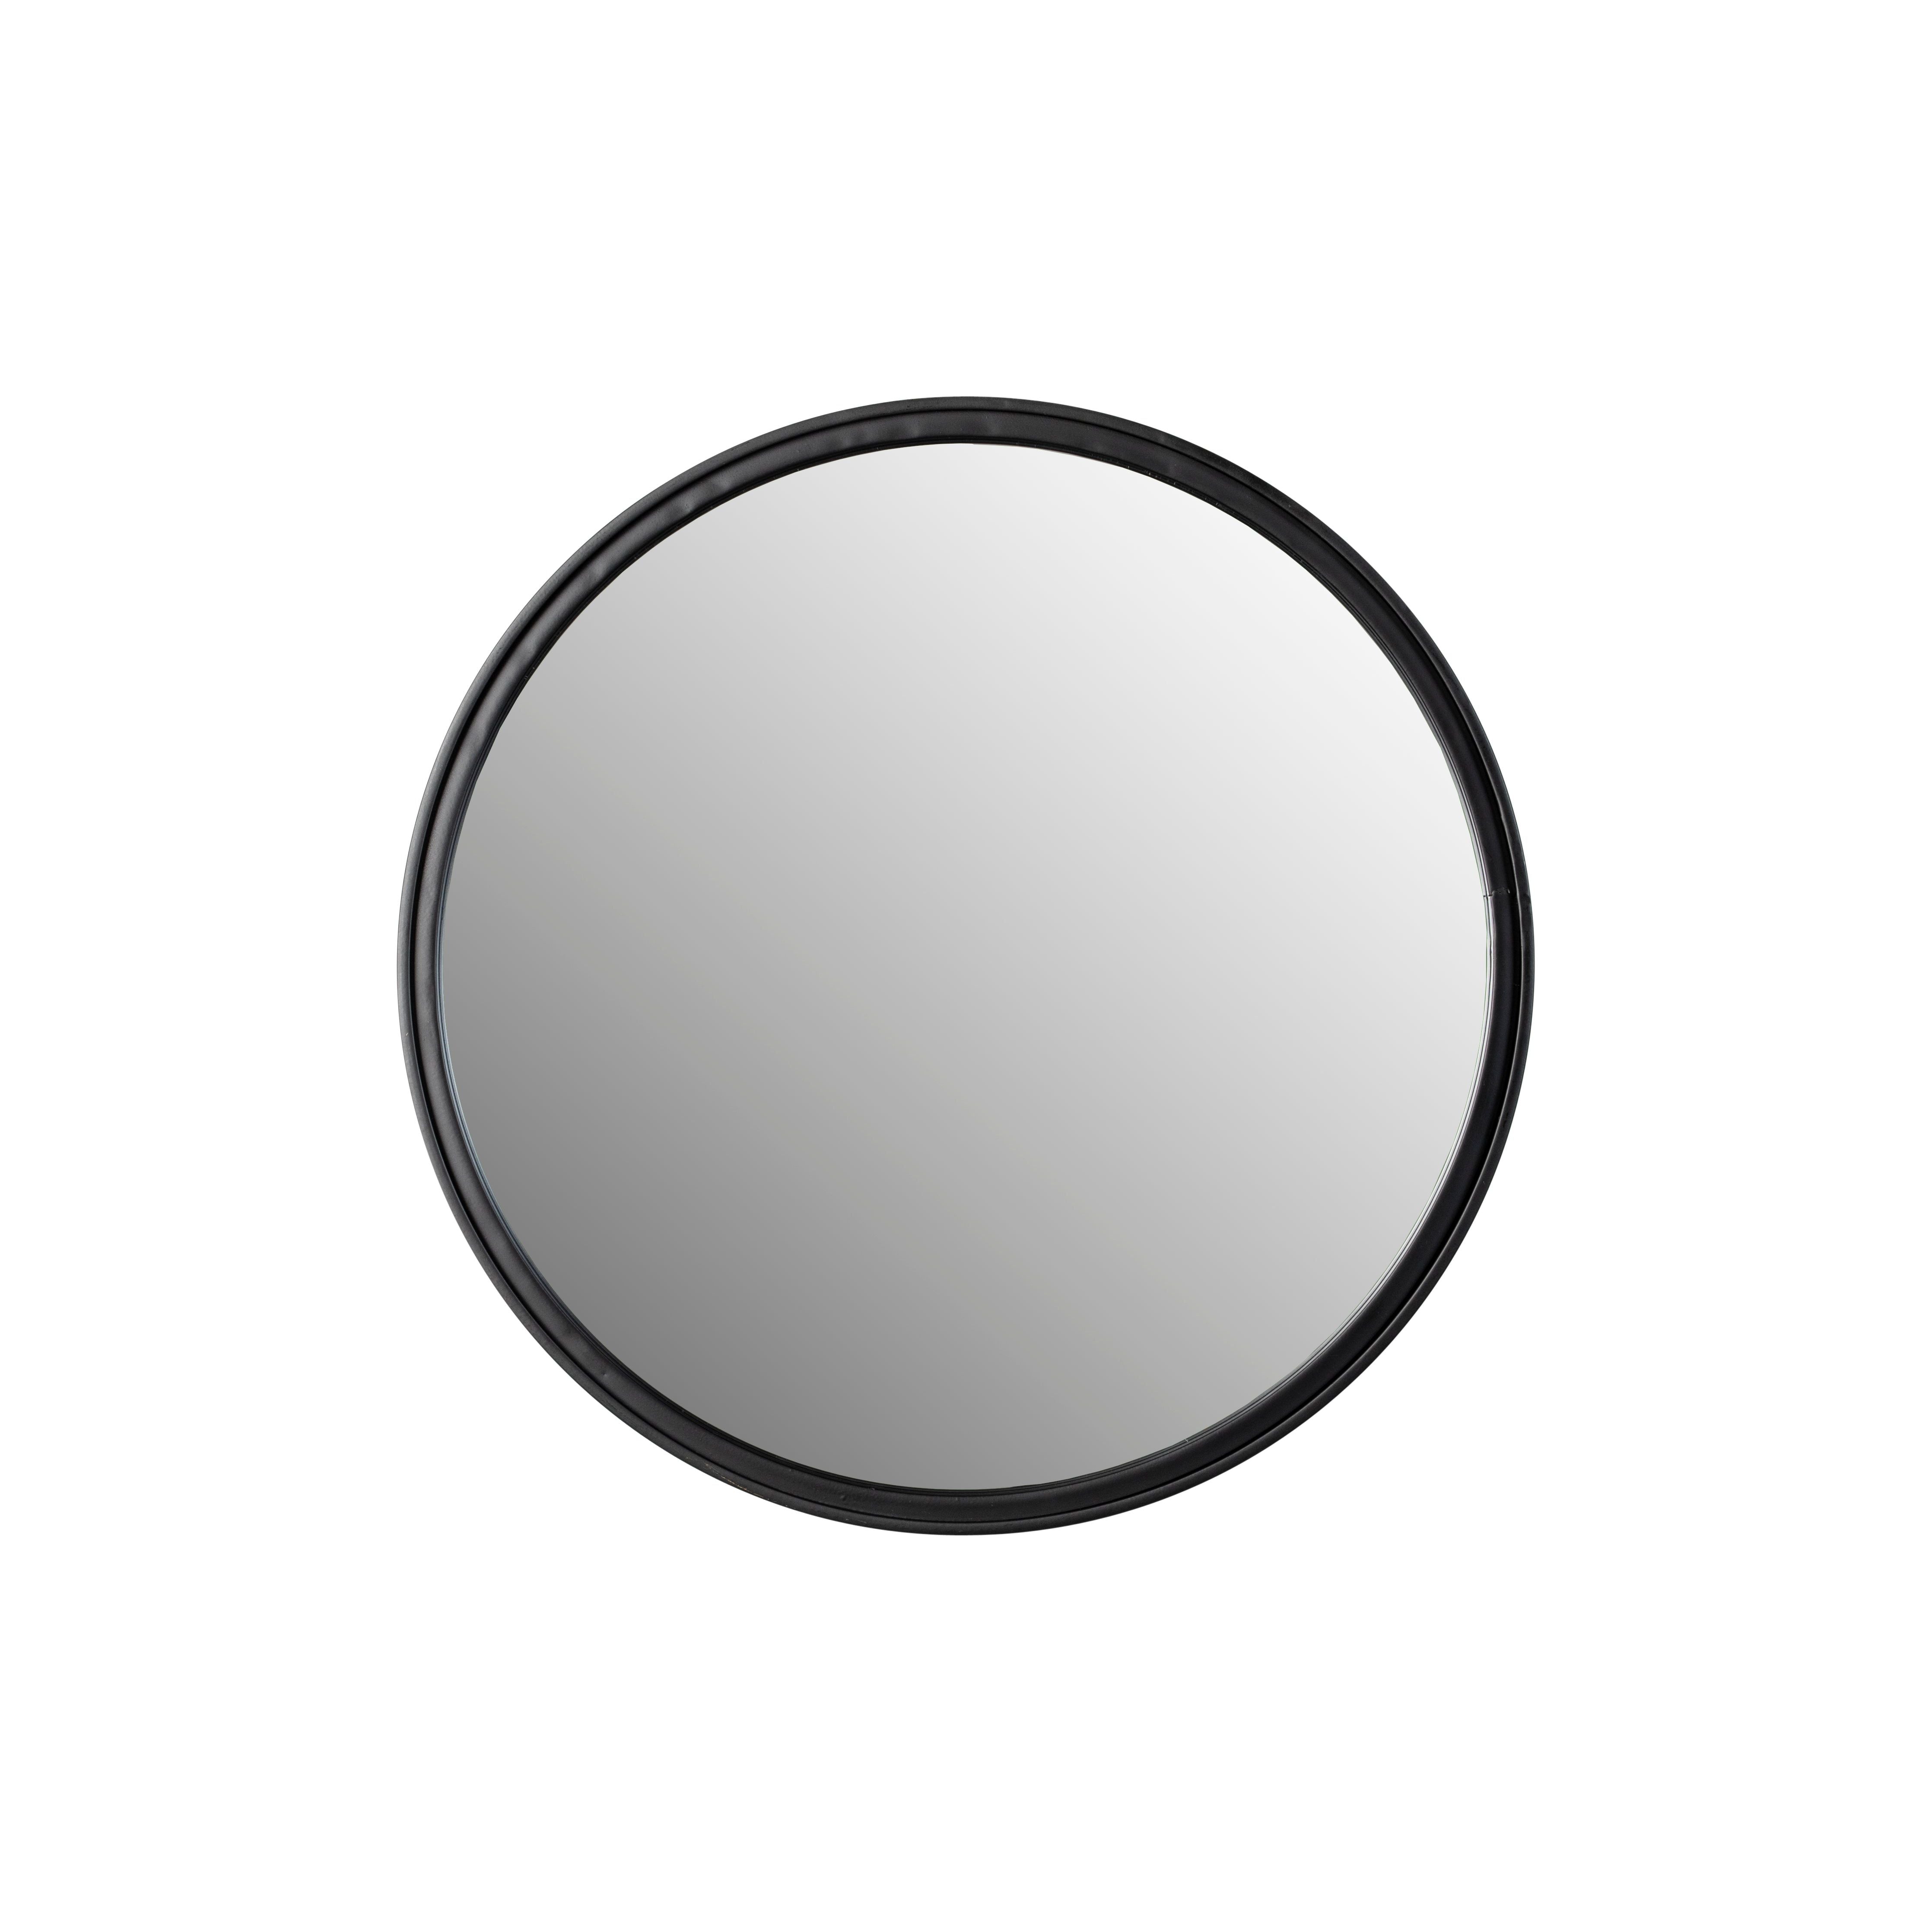 Mirror matz round black